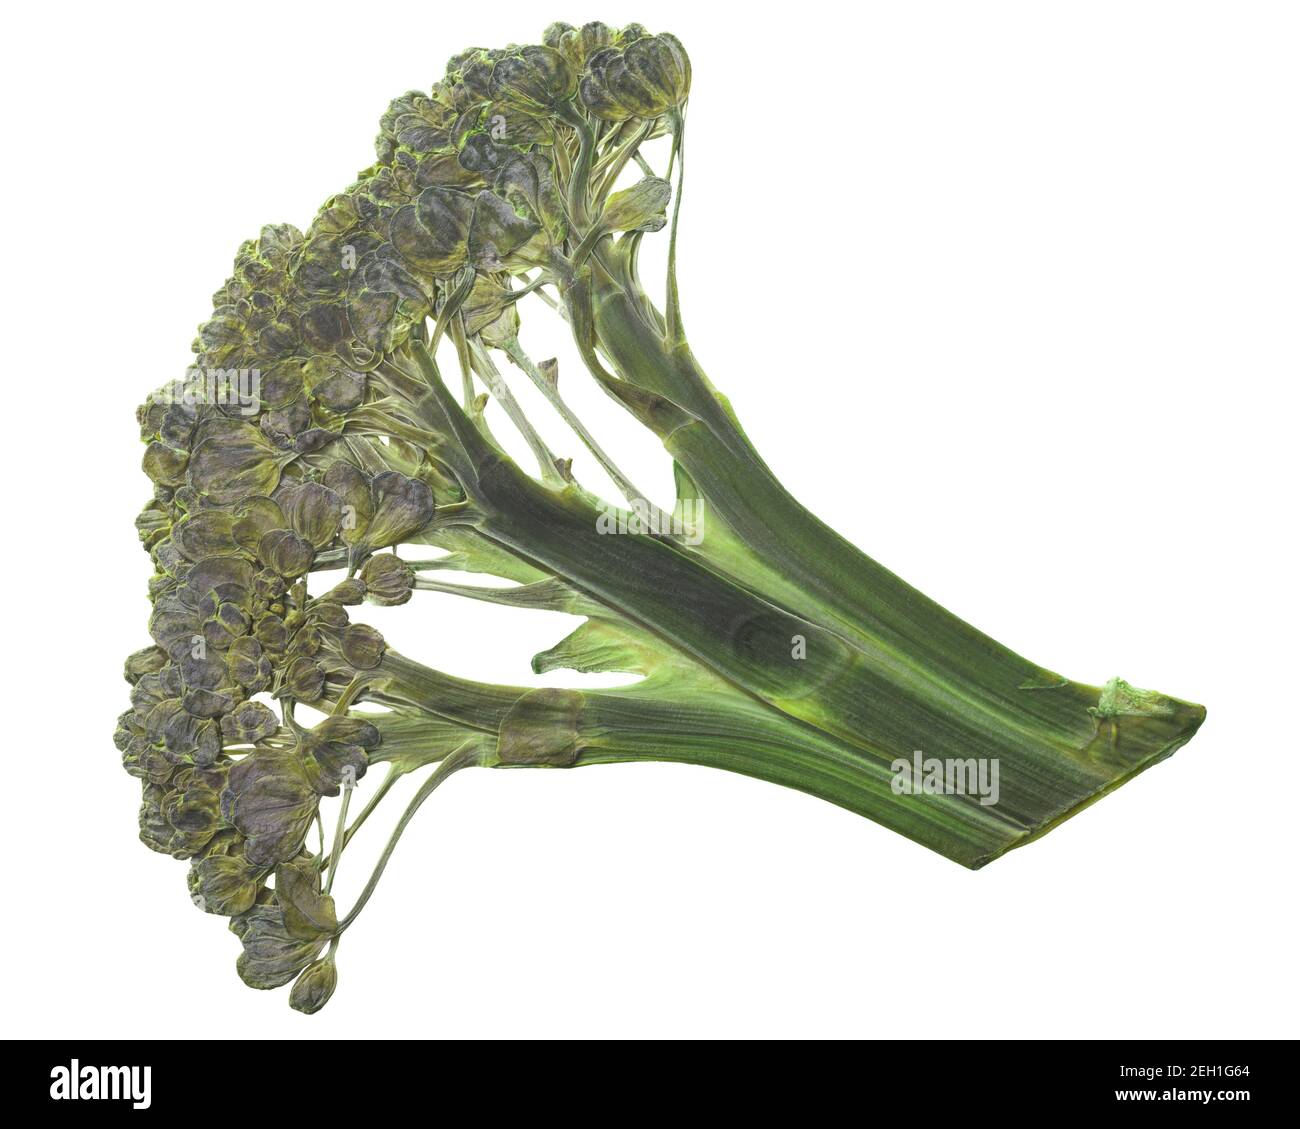 Testa di broccoli appiattita essiccata (Brassica oleracea var. Italica), isolata, vista dall'alto Foto Stock